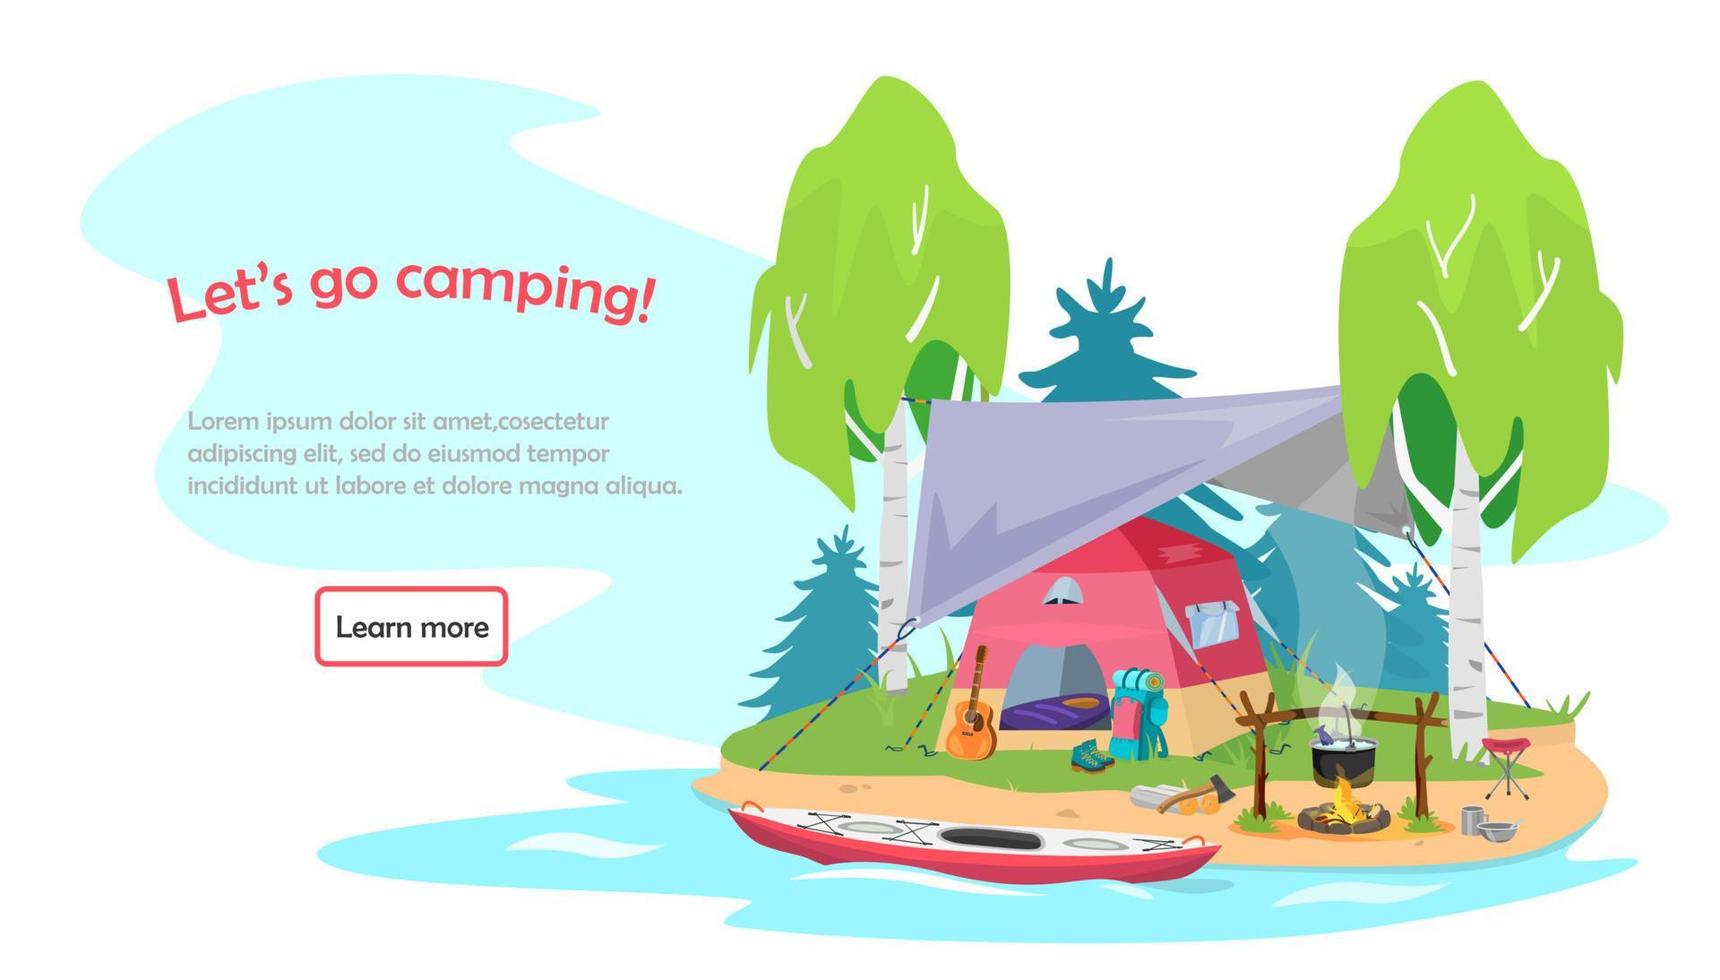 banner web en estilo de dibujos animados planos que invita a acampar, hacer senderismo, kayak, recreación activa, viajar. campamento de verano con carpa bajo toldo, fogata en la costa del río. vector